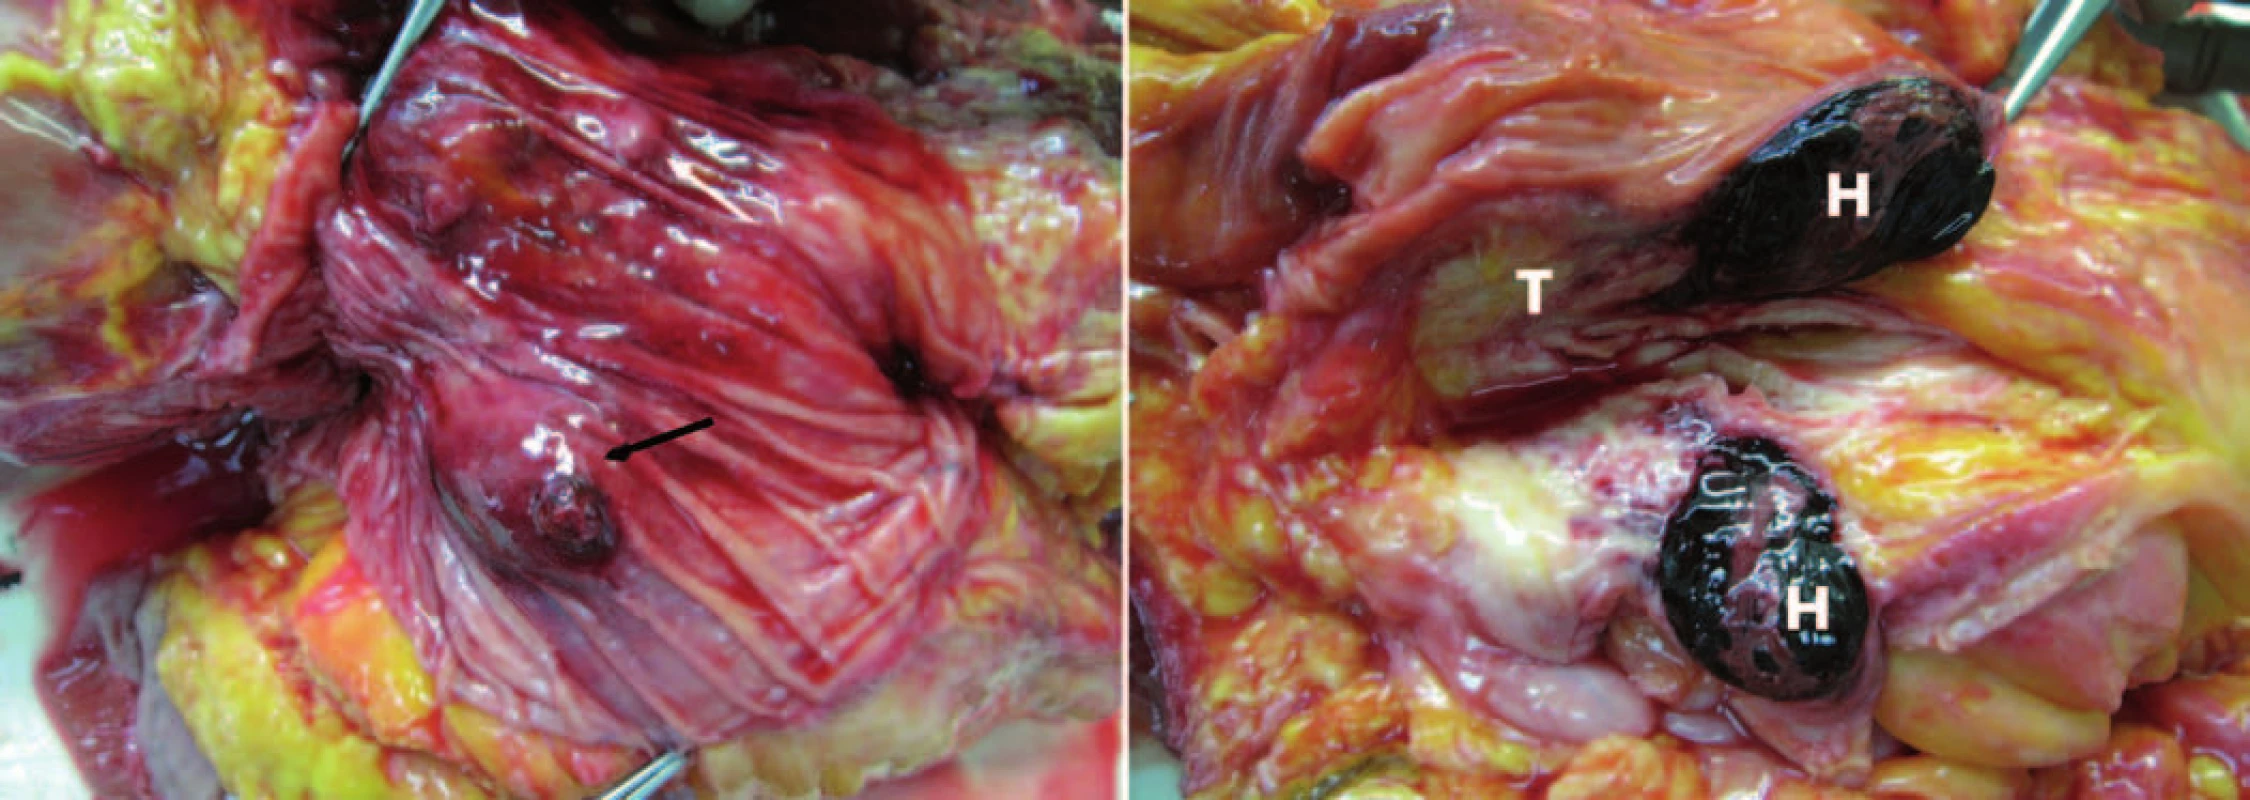 Pitevný nález. Vľavo: pohľad na sliznicu duodena, hematóm a miesto krvácania označené čiernou šípkou, Vaterská papila označená bielou šípkou. Vpravo: pohľad na reze – hematóm v stene duodena (H) a tumor hlavy pankresu (T).
Fig. 4. Autopsy findings. Left: a view of the duodenal mucosa, hematoma and bleeding site identified by a black arrow, Vater papilla marked with a white arrow. Right: cross-sectional view of a hematoma in the wall of the duodenum (H) and tumor of pancreas head (T).